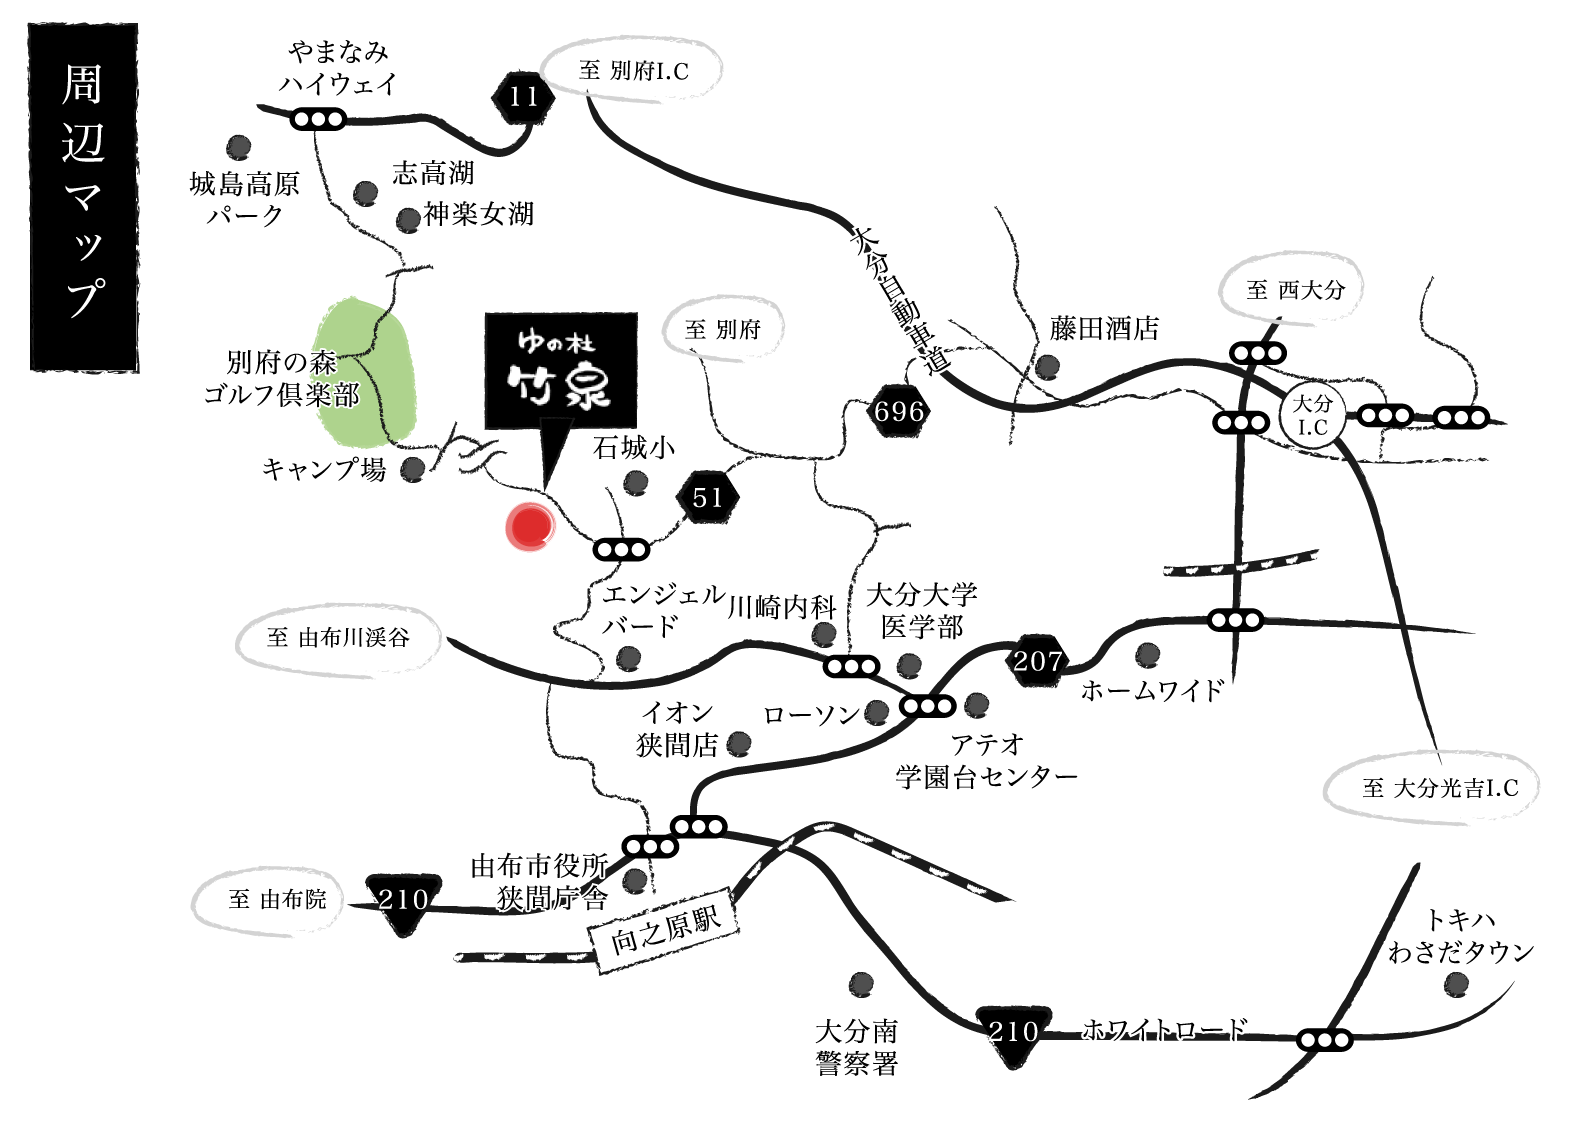 竹泉周辺マップ